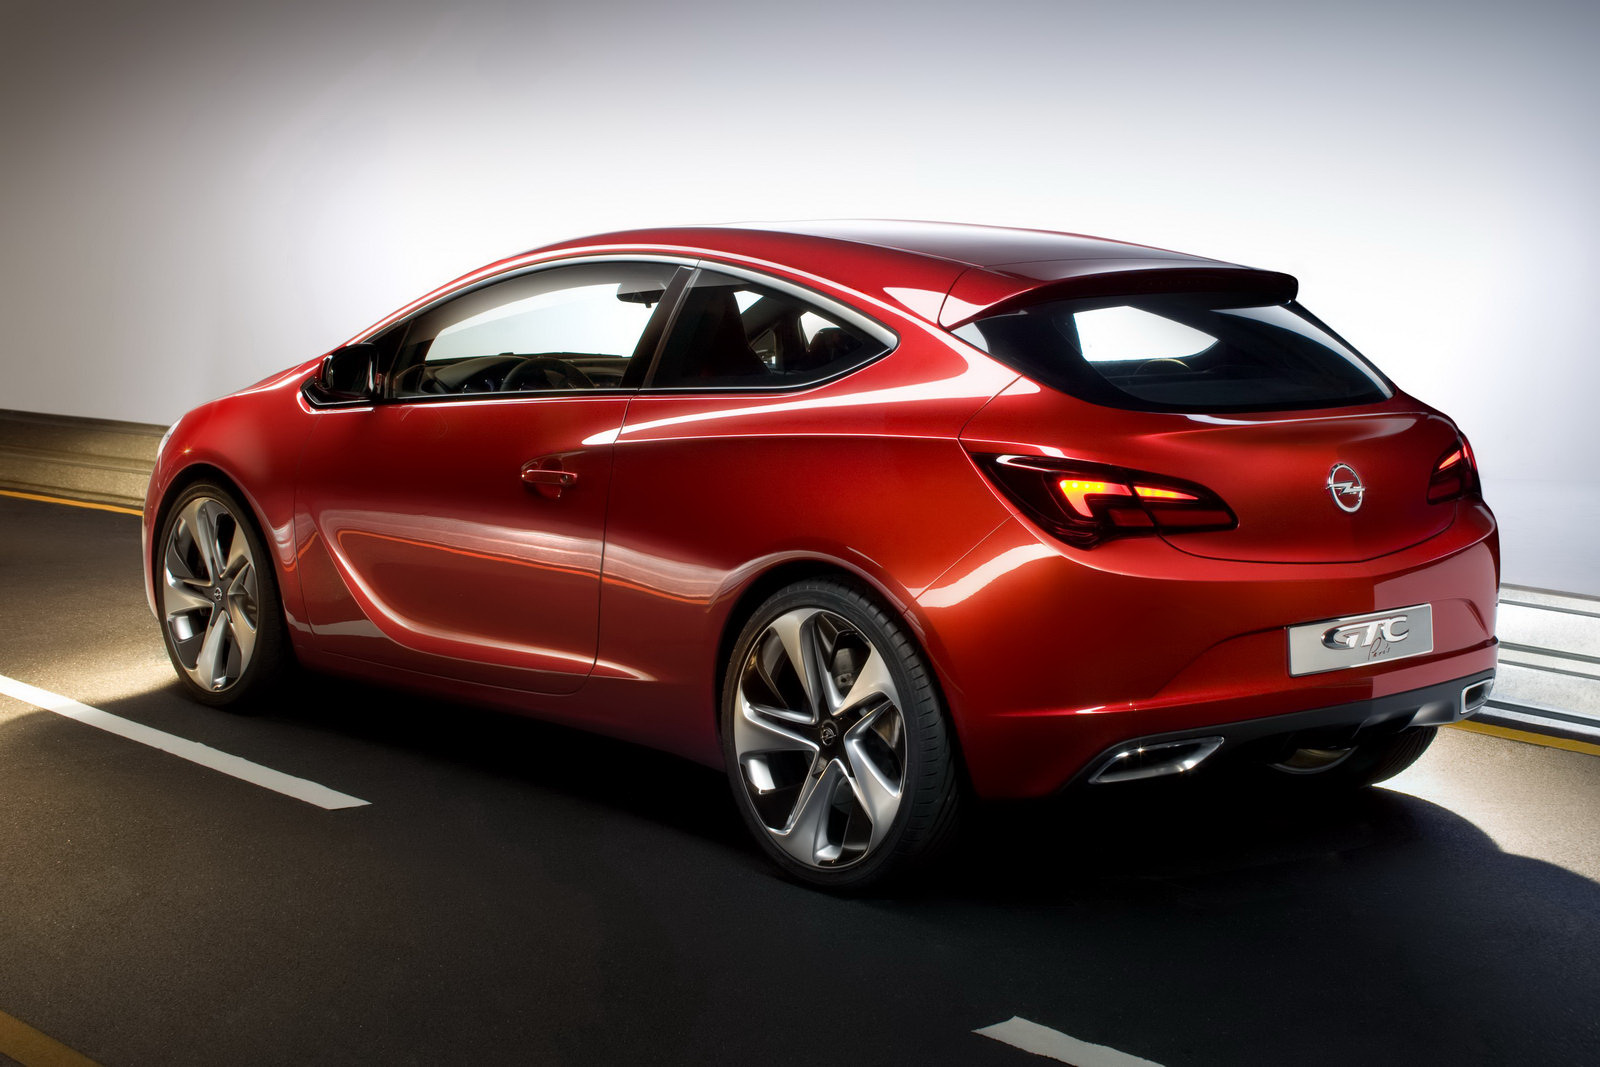 Les dernières nouvelles sur le lancement de la trappe sportive Opel Astra sont